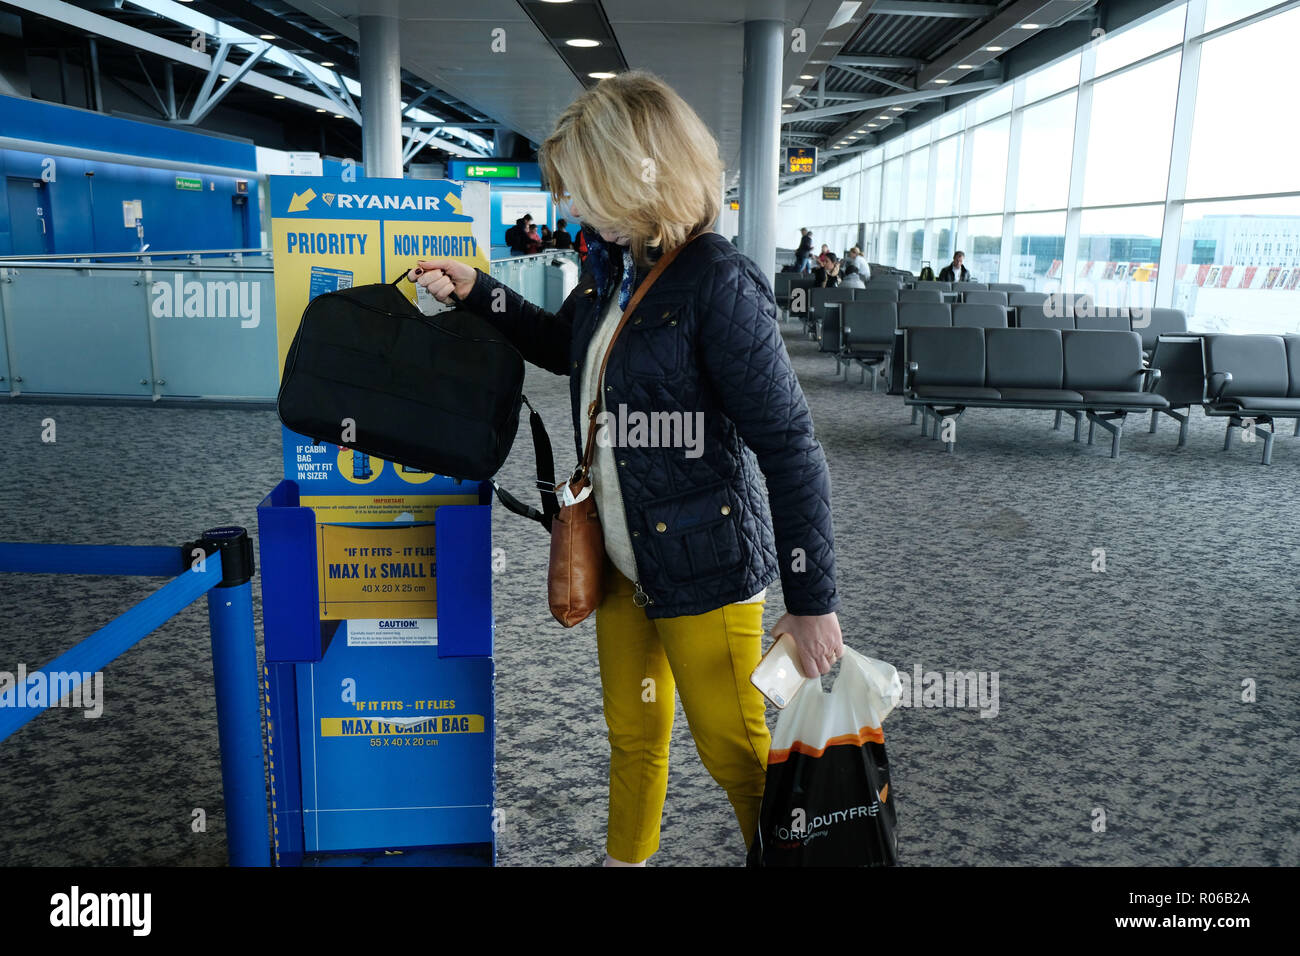 Pic muestra: nueva bolsa diminuto tamaño permitido en aviones de Ryanair de forma gratuita. Control sizer en todas puertas para dejar pasajeros ver aquí en el aeropuerto de Stansted. P Fotografía